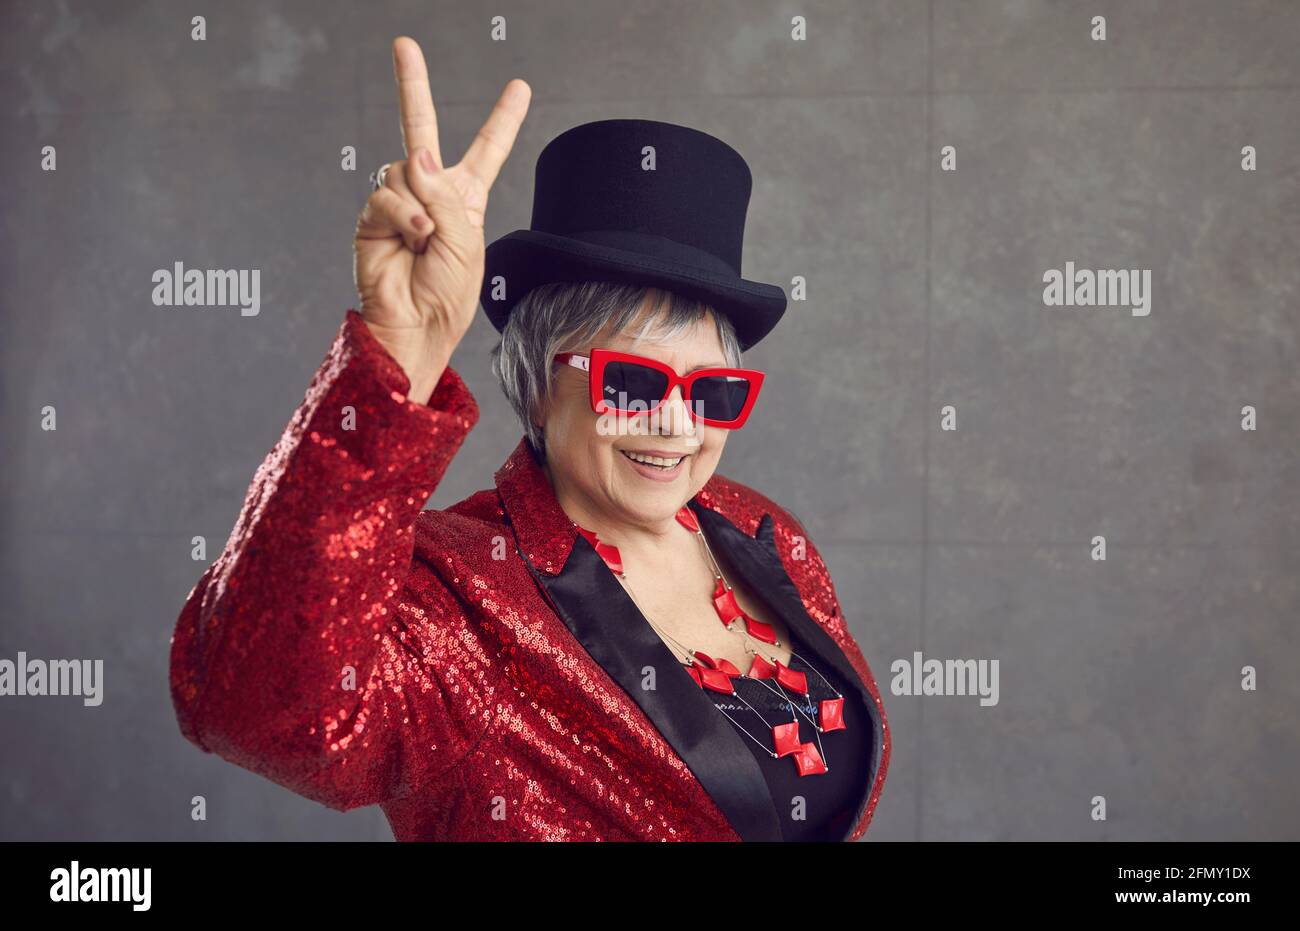 Glückliche ältere Frau in Pailletten-Outfit, Hut und coole Brille tun V Zeichen Geste Stockfoto